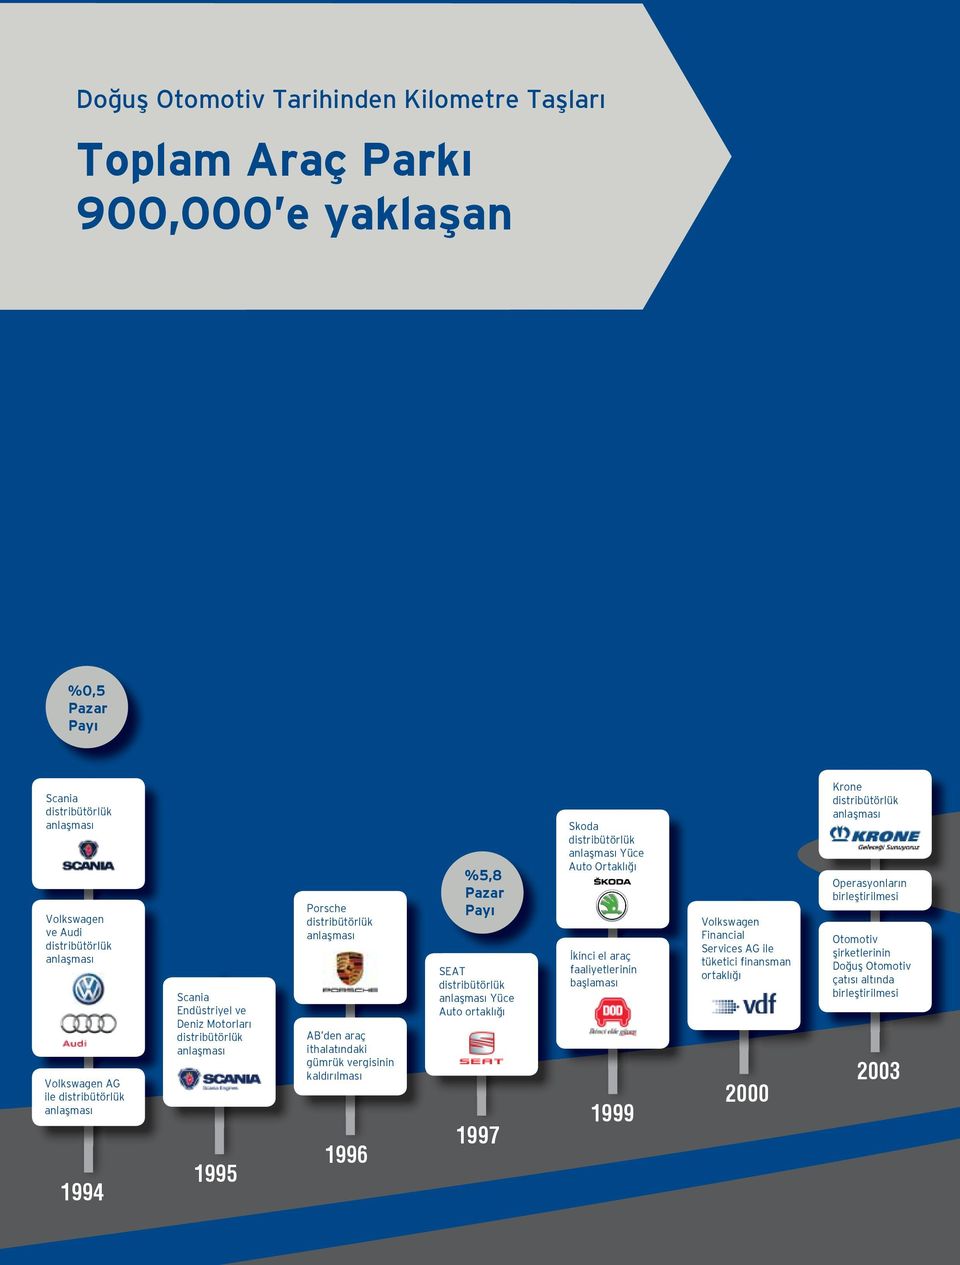 %5,8 Pazar Payı SEAT distribütörlük Yüce Auto ortaklığı 1997 Skoda distribütörlük Yüce Auto Ortaklığı İkinci el araç faaliyetlerinin başlaması 1999 Volkswagen Financial